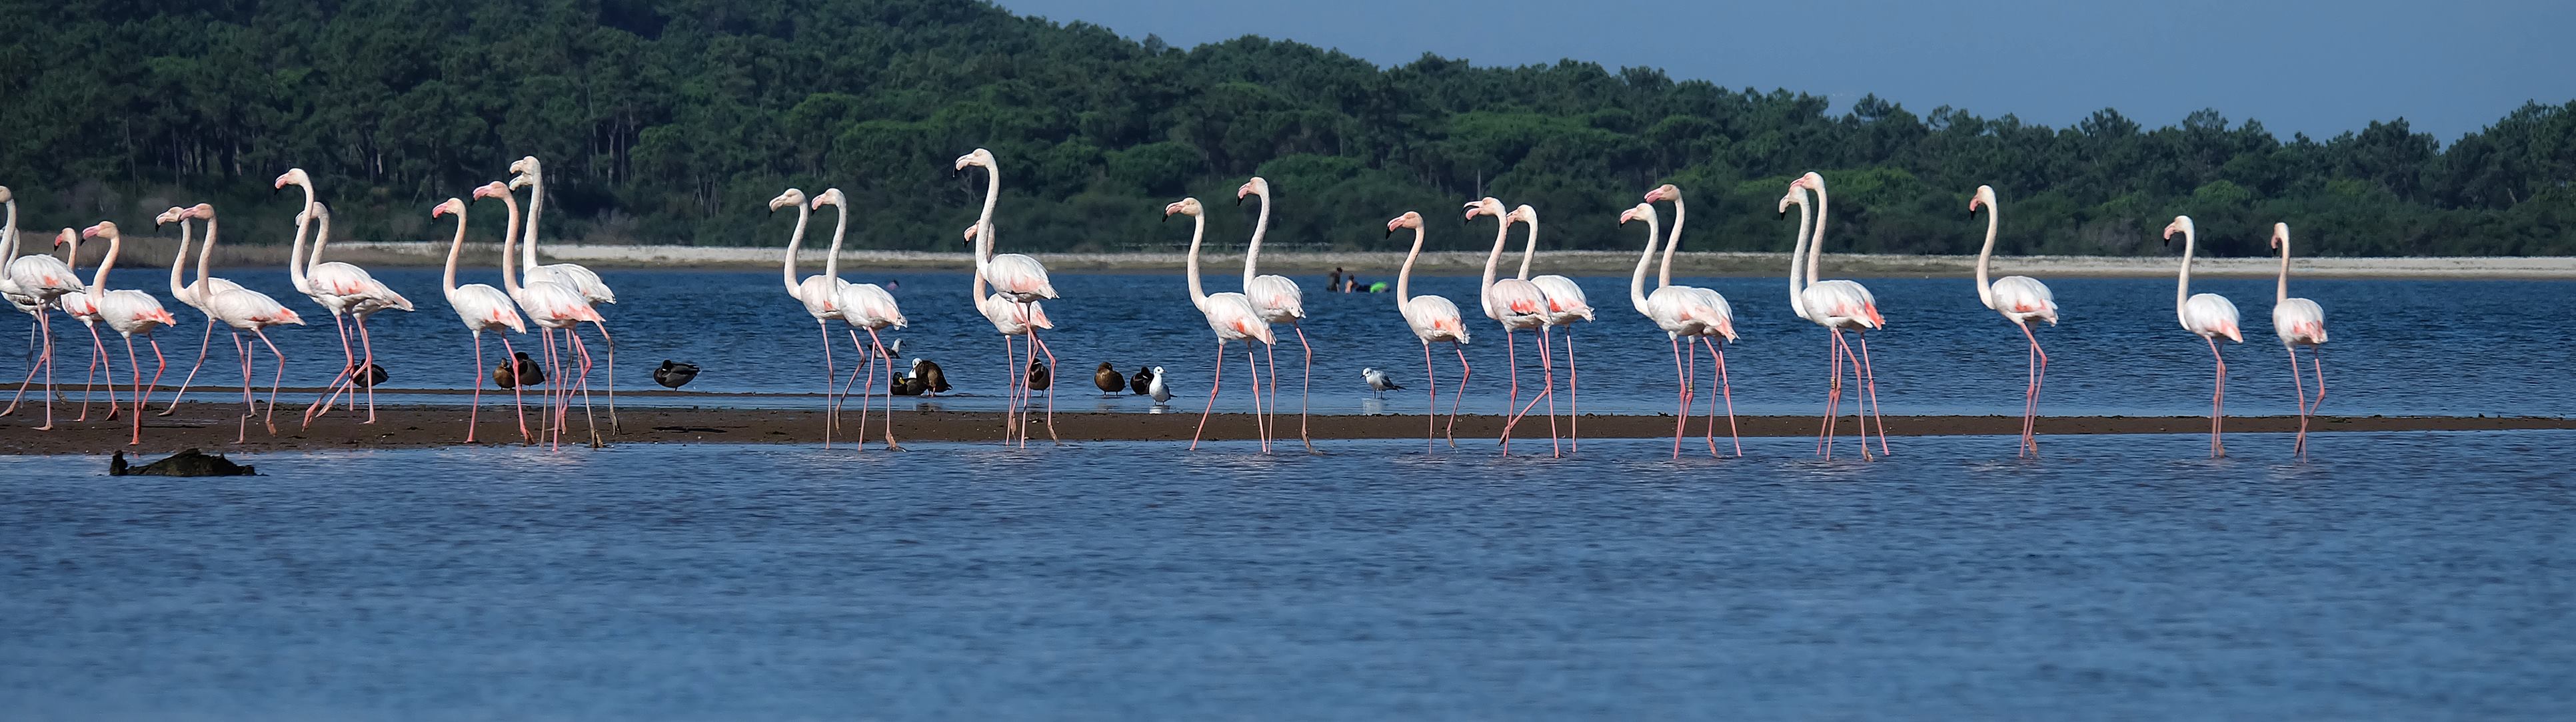 Obidos lagoon flamingos facebook escola de vela da lagos